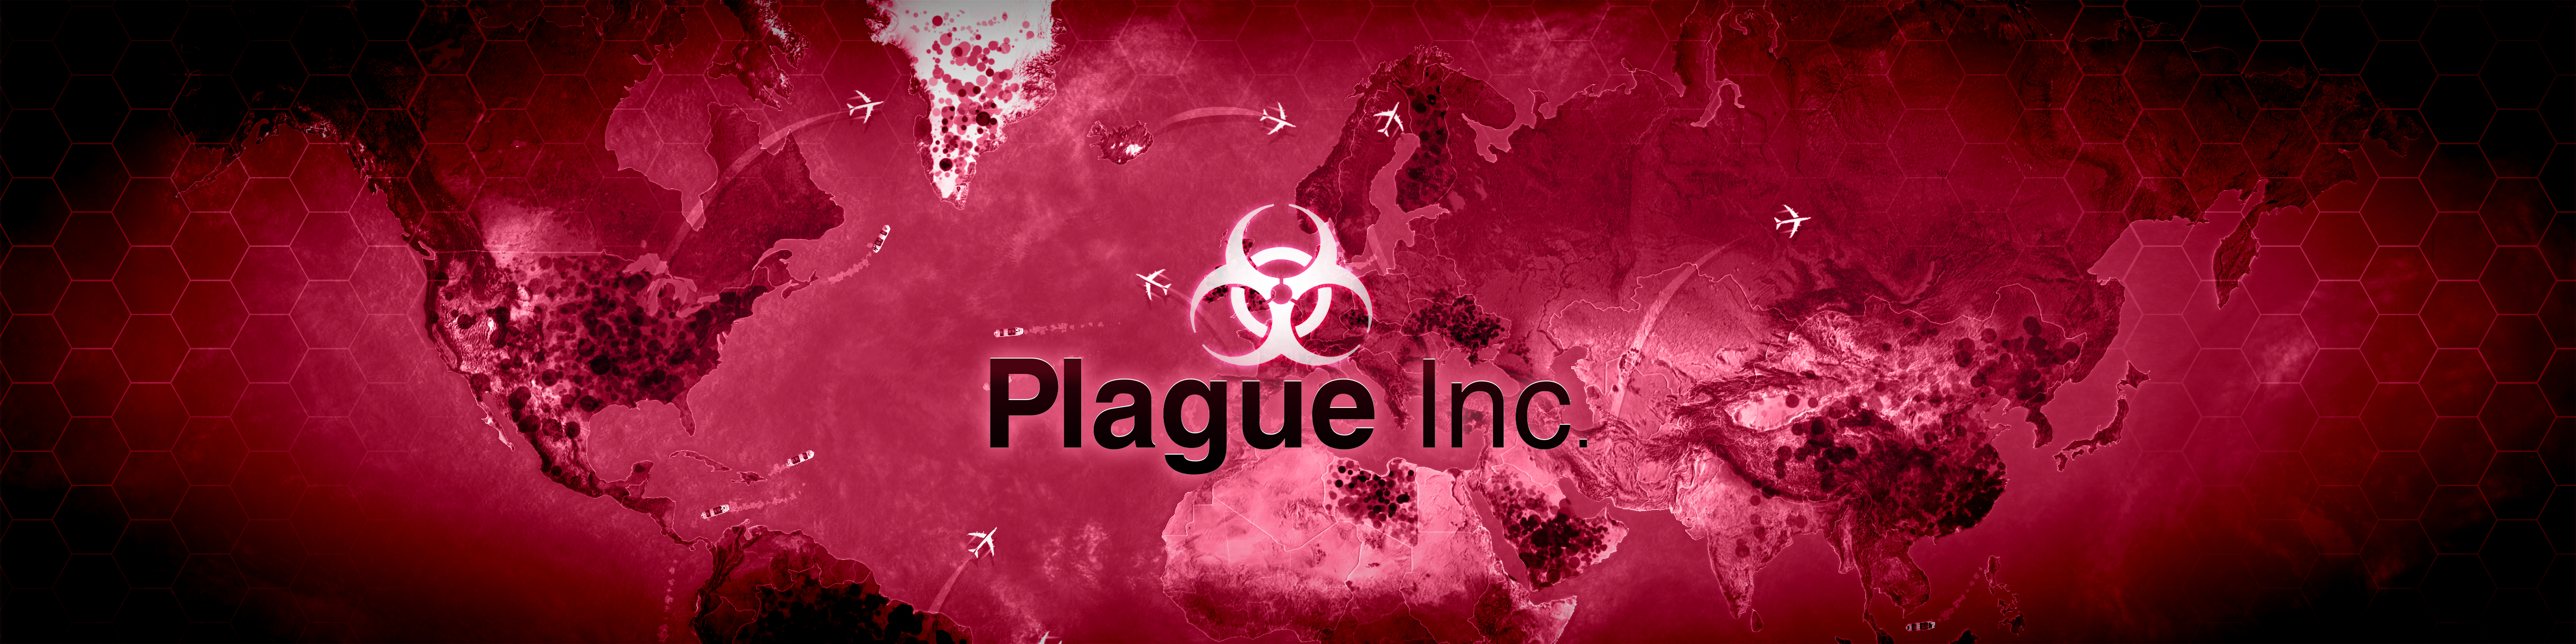 Plague inc просит стим фото 24